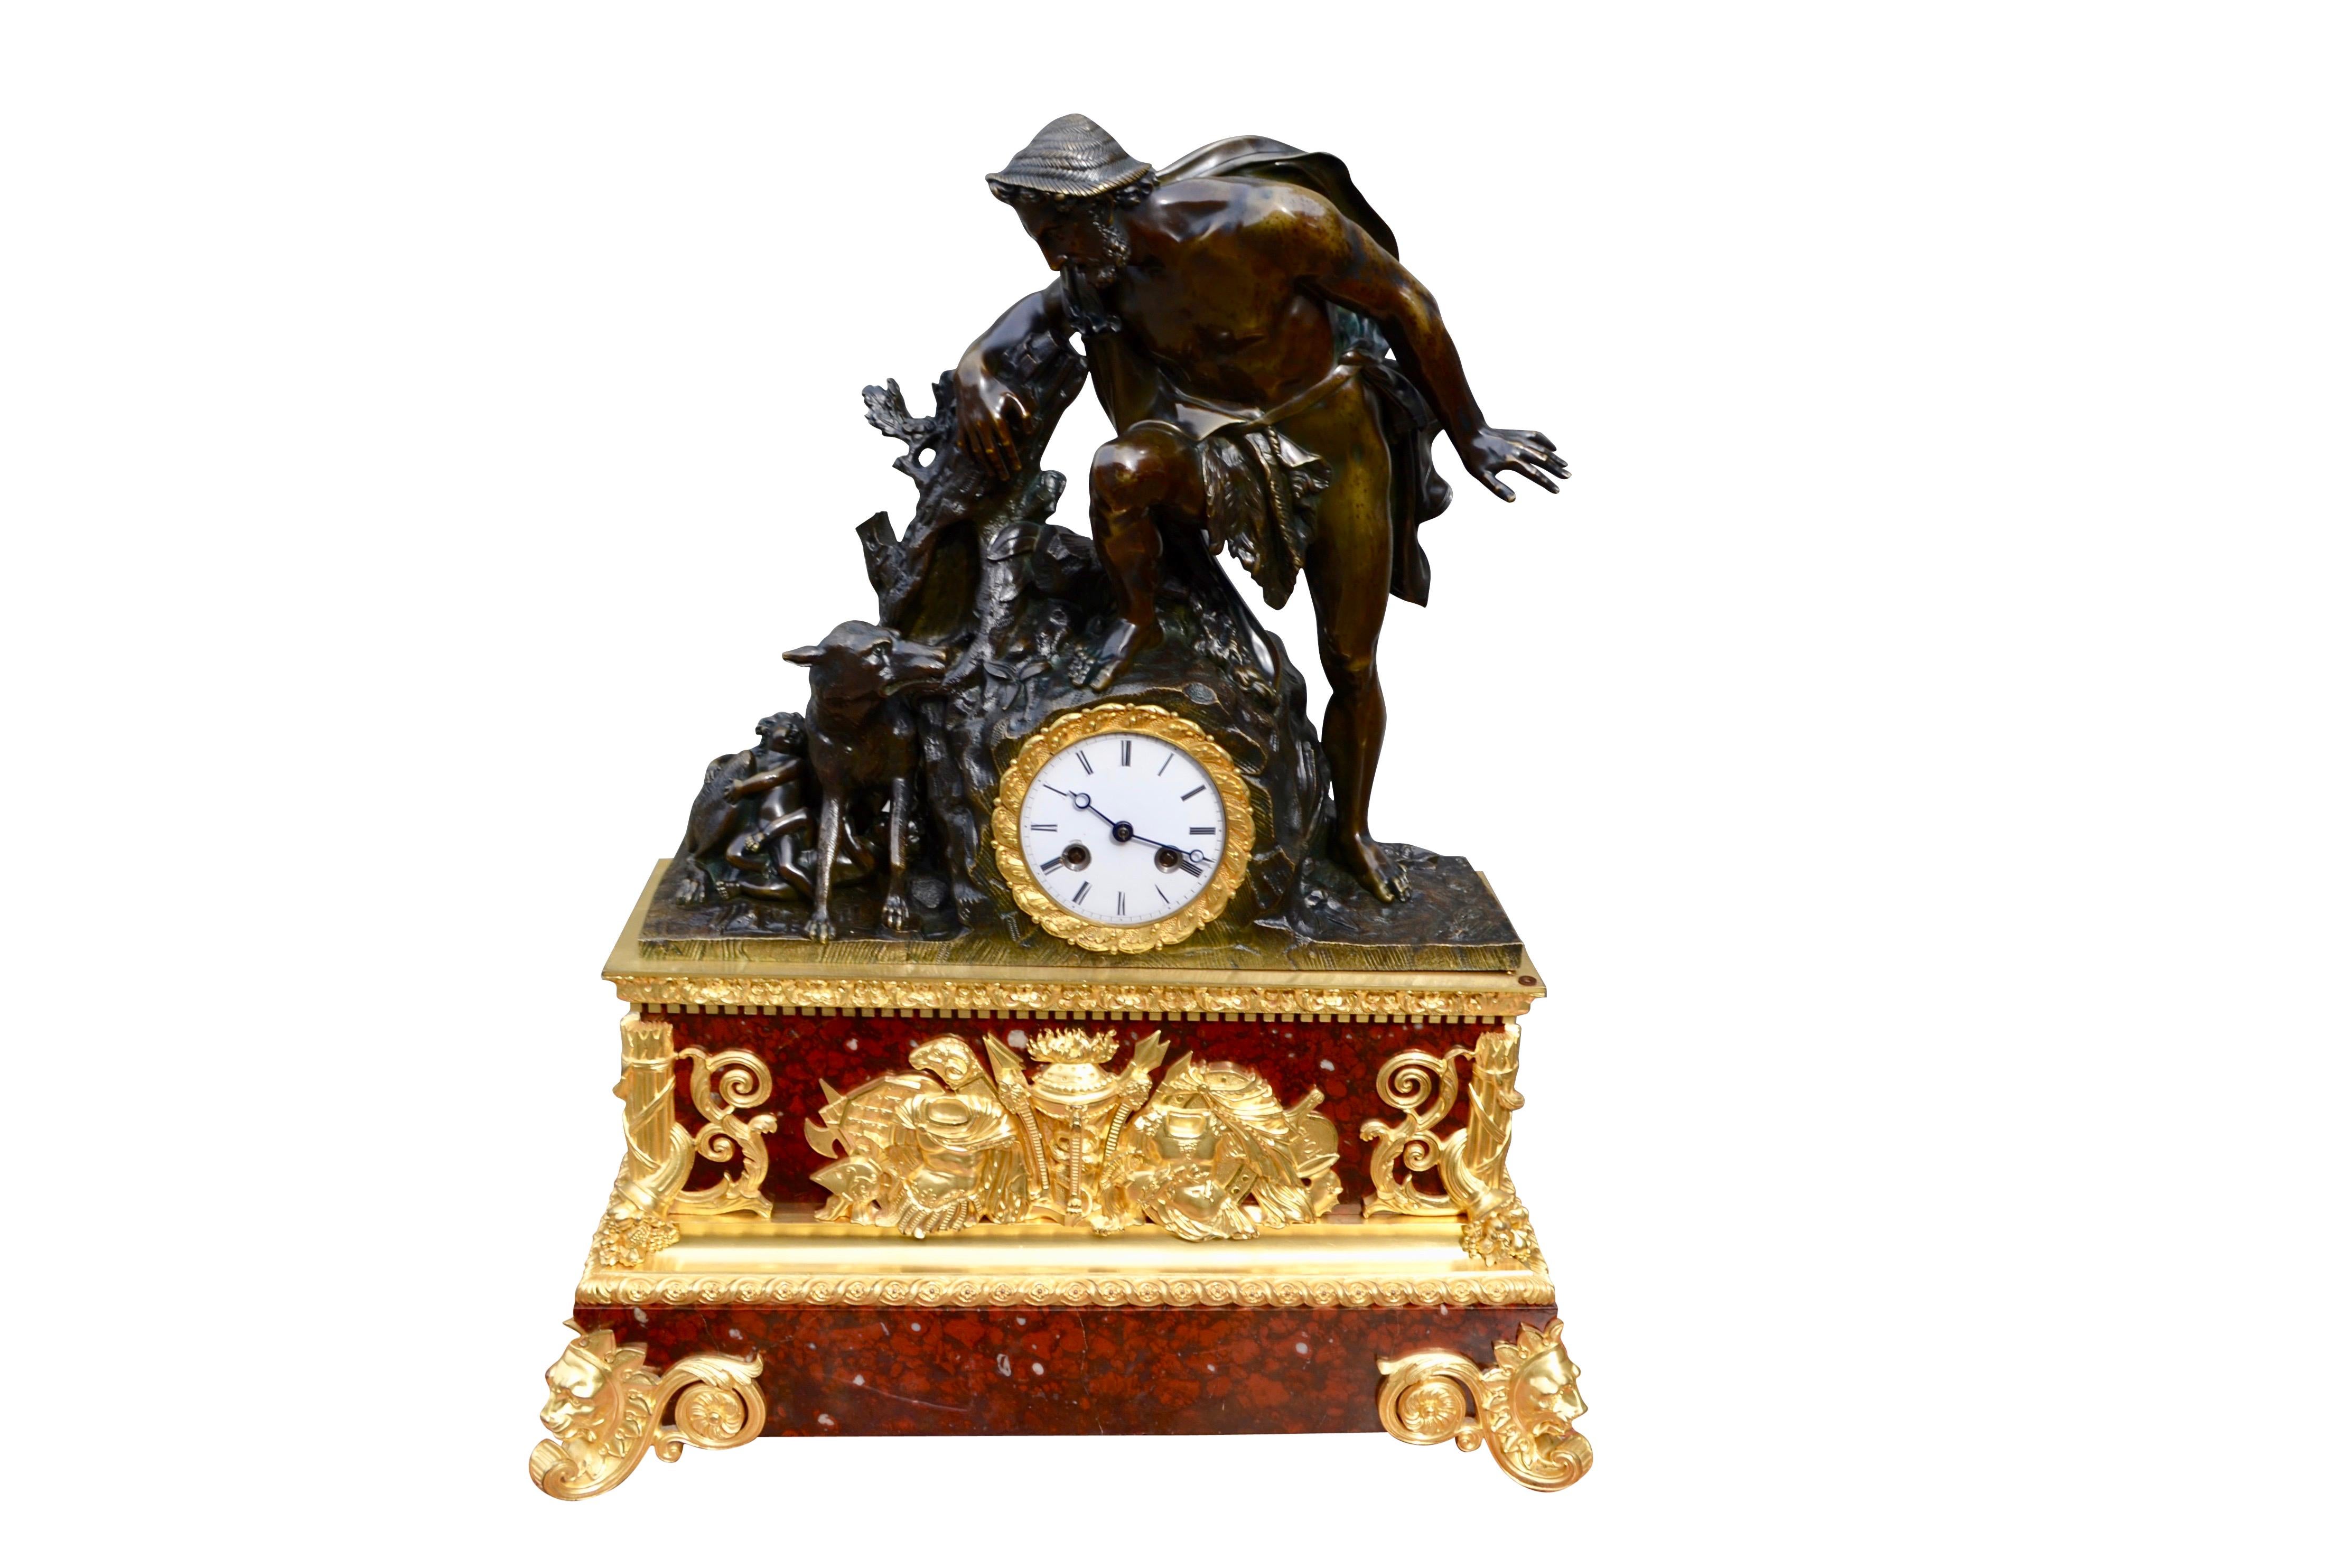 L'horloge de manteau de style Empire français de la fin de l'ère française/Charles X est de la plus haute qualité en termes de moulage, de ciselure et de dorure du bronze. La figure partiellement vêtue de Faustulus s'appuie sur un affleurement